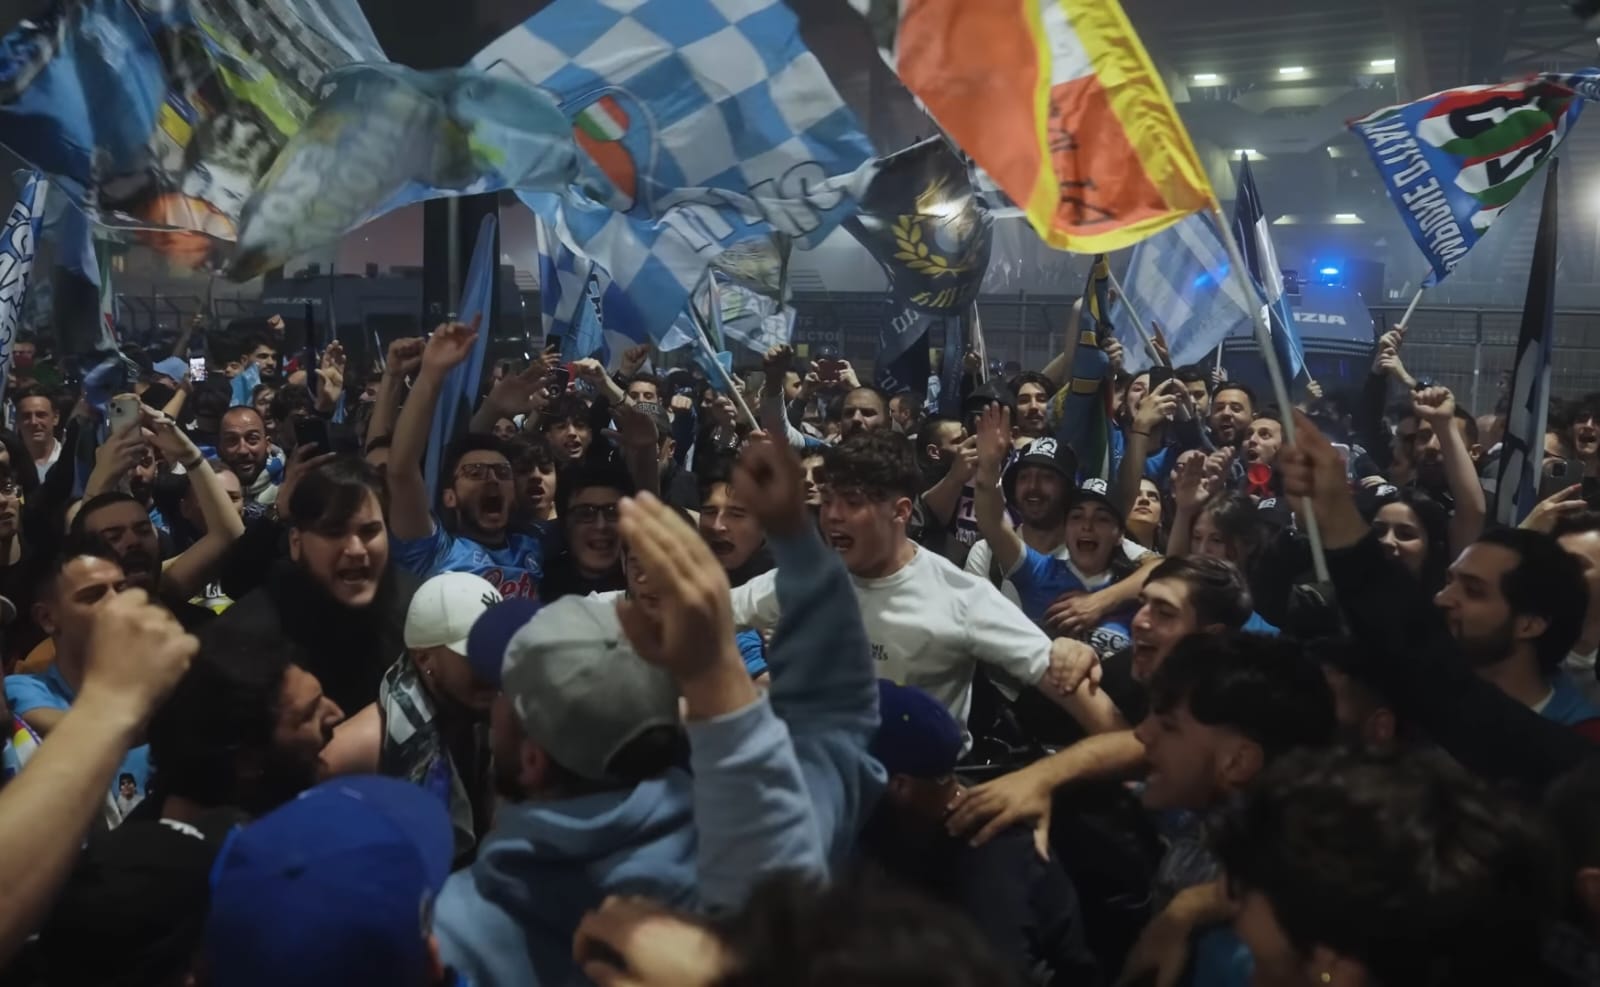 Seorang Tifosi Napoli Tewas Tertembak Disaat Perayaan Scudetto Ke-3